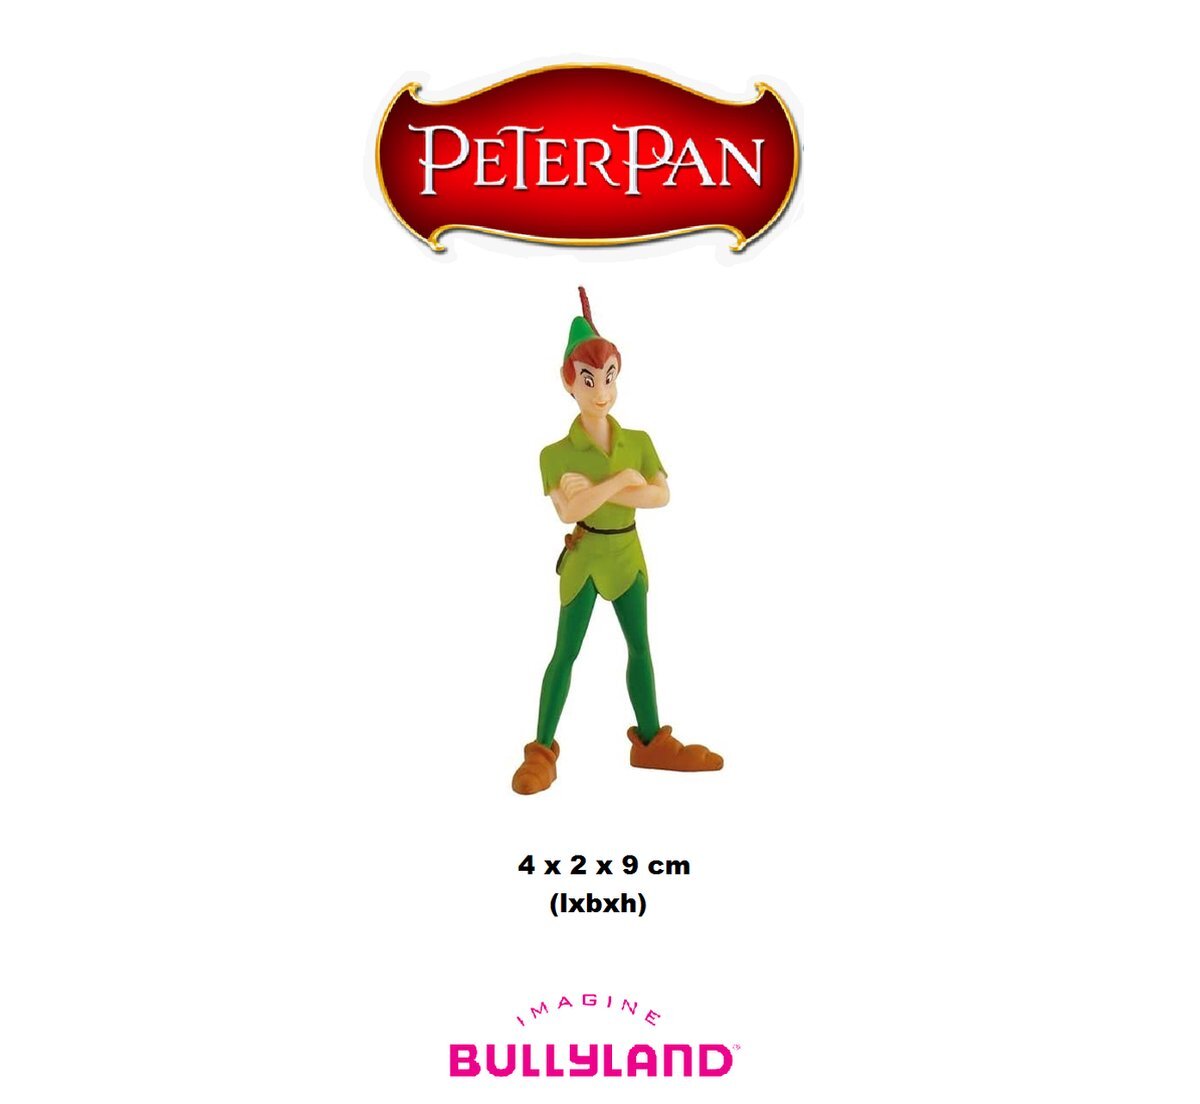 Bullyland 12650 - Speelfiguur, Walt Disney Peter Pan, ca. 9,4 cm, ideaal als taartfiguur, gedetailleerd, PVC-vrij, leuk cadeau voor kinderen om fantasierijk te spelen